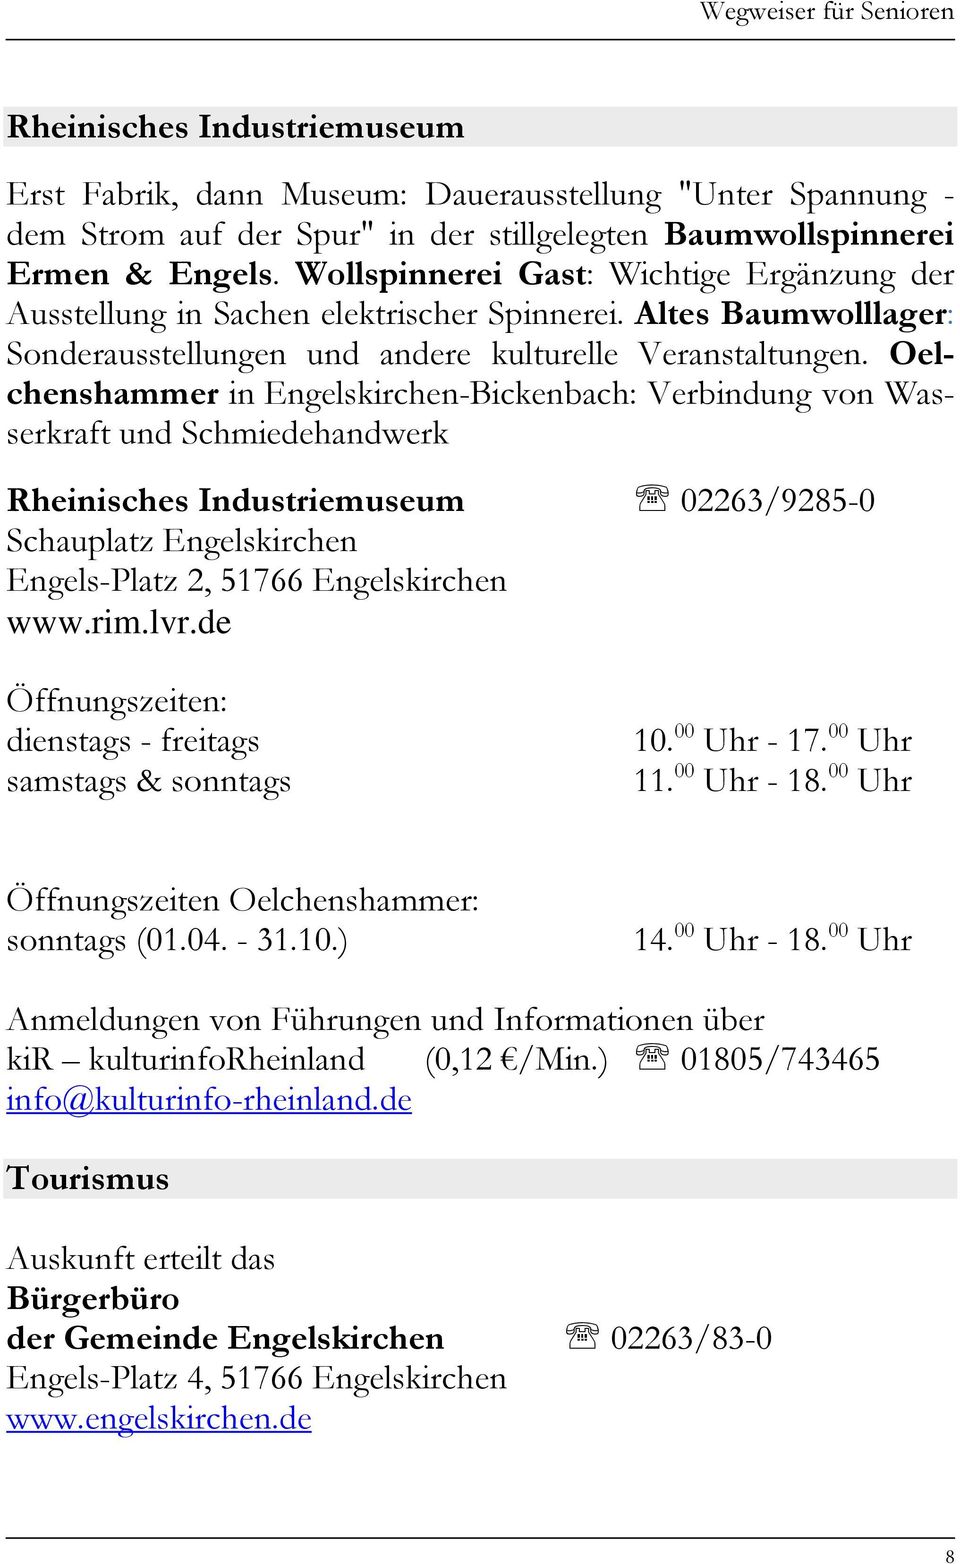 Oelchenshammer in Engelskirchen-Bickenbach: Verbindung von Wasserkraft und Schmiedehandwerk Rheinisches Industriemuseum 02263/9285-0 Schauplatz Engelskirchen Engels-Platz 2, 51766 Engelskirchen www.